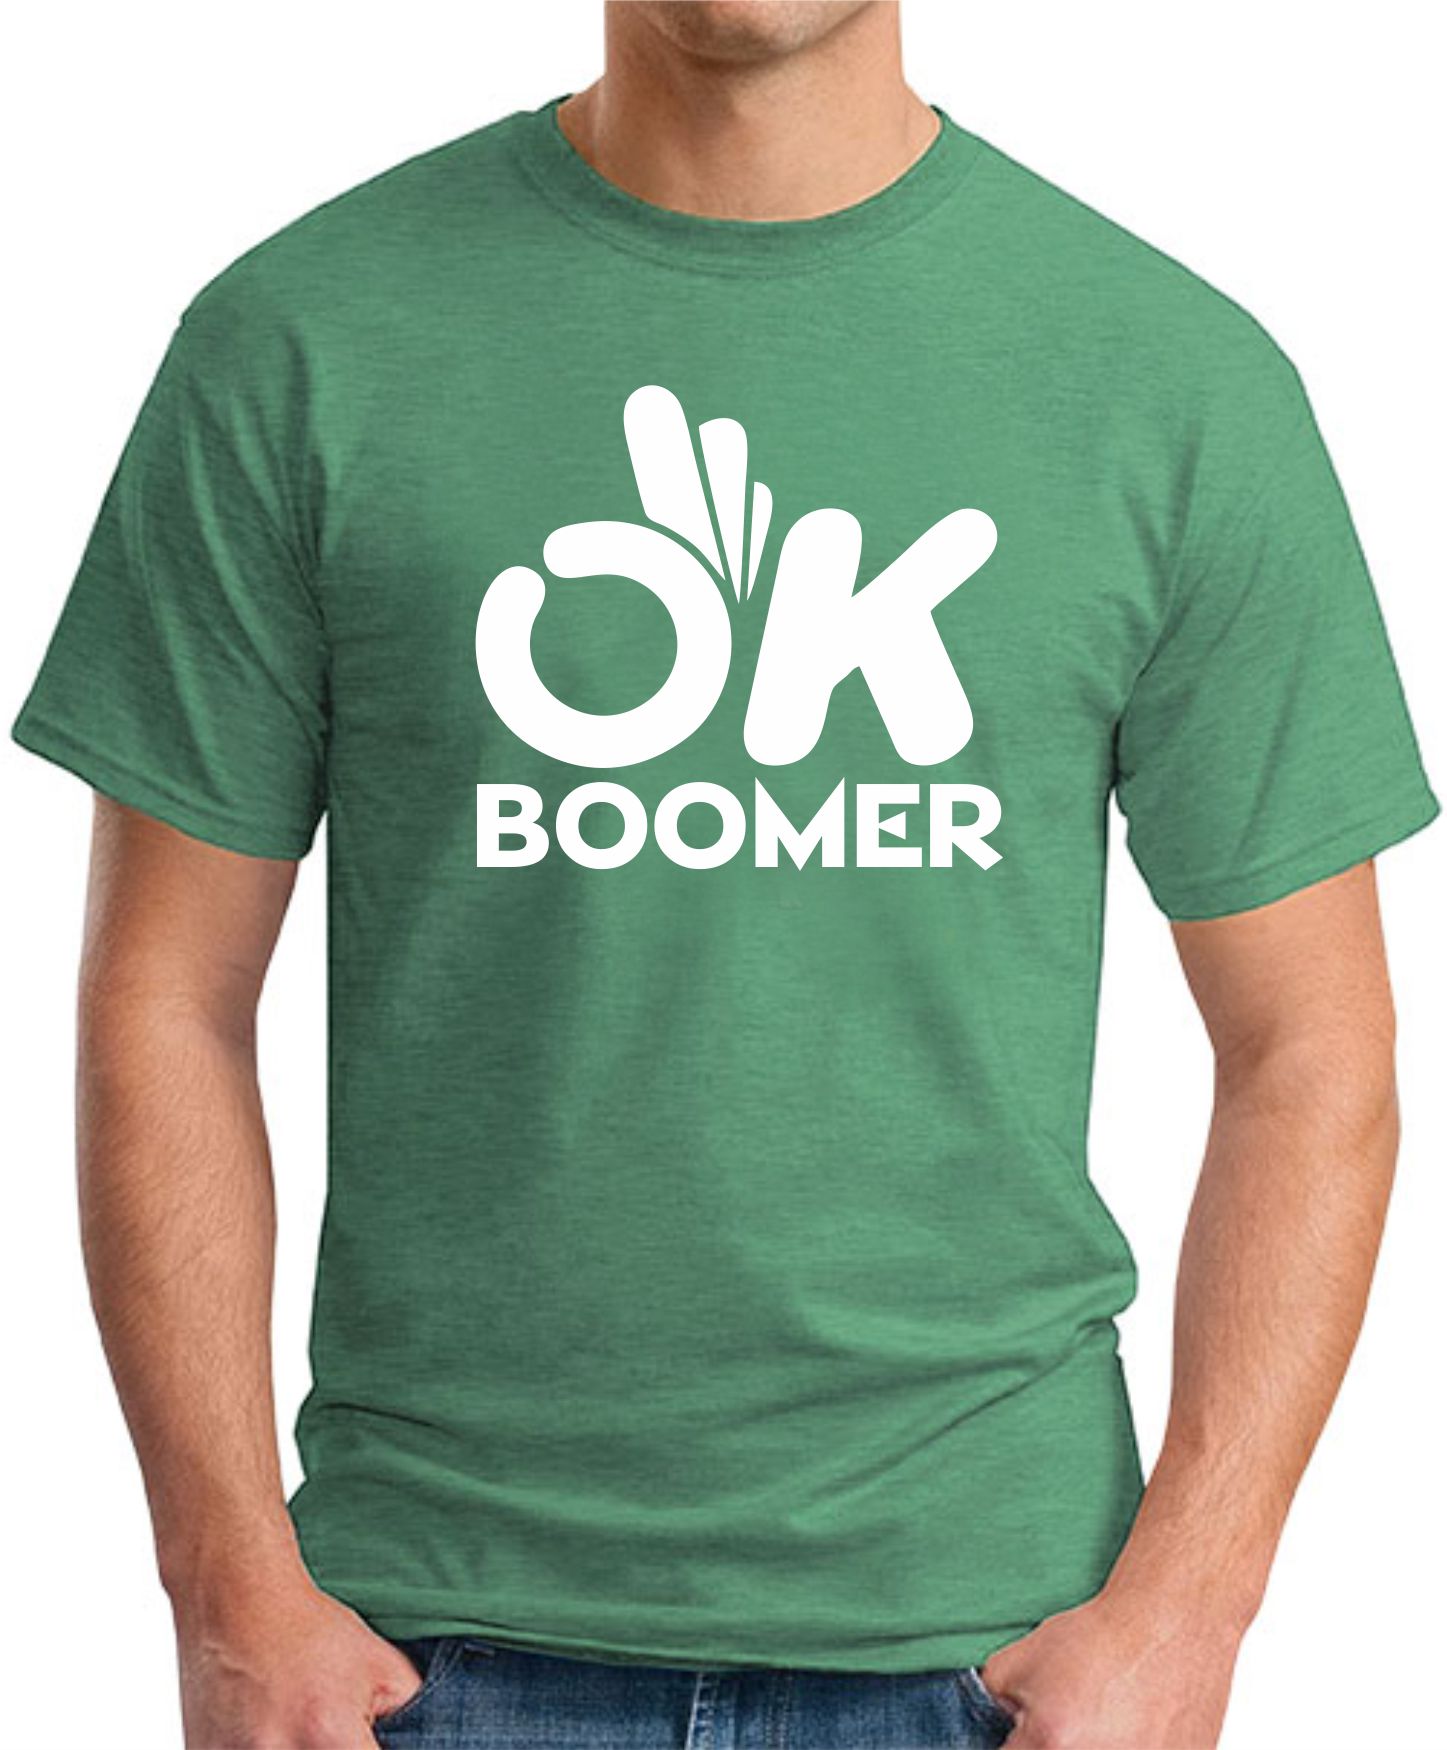 OK BOOMER T-SHIRT - GeekyTees